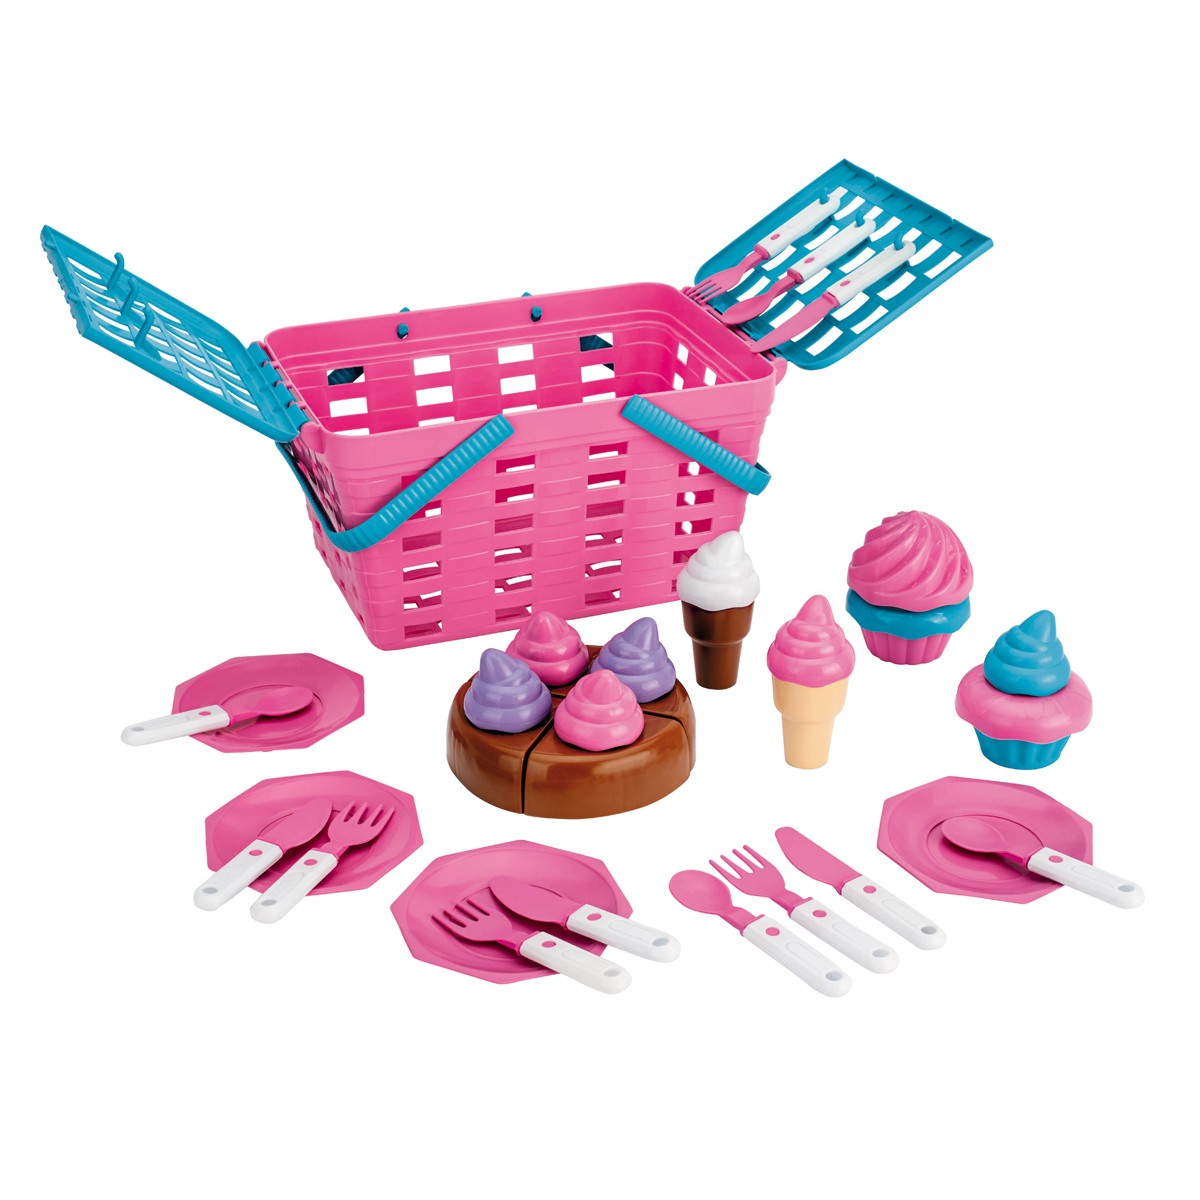 Cesta de Piquenique de Brinquedo Cupcake com Acessórios-631-71304